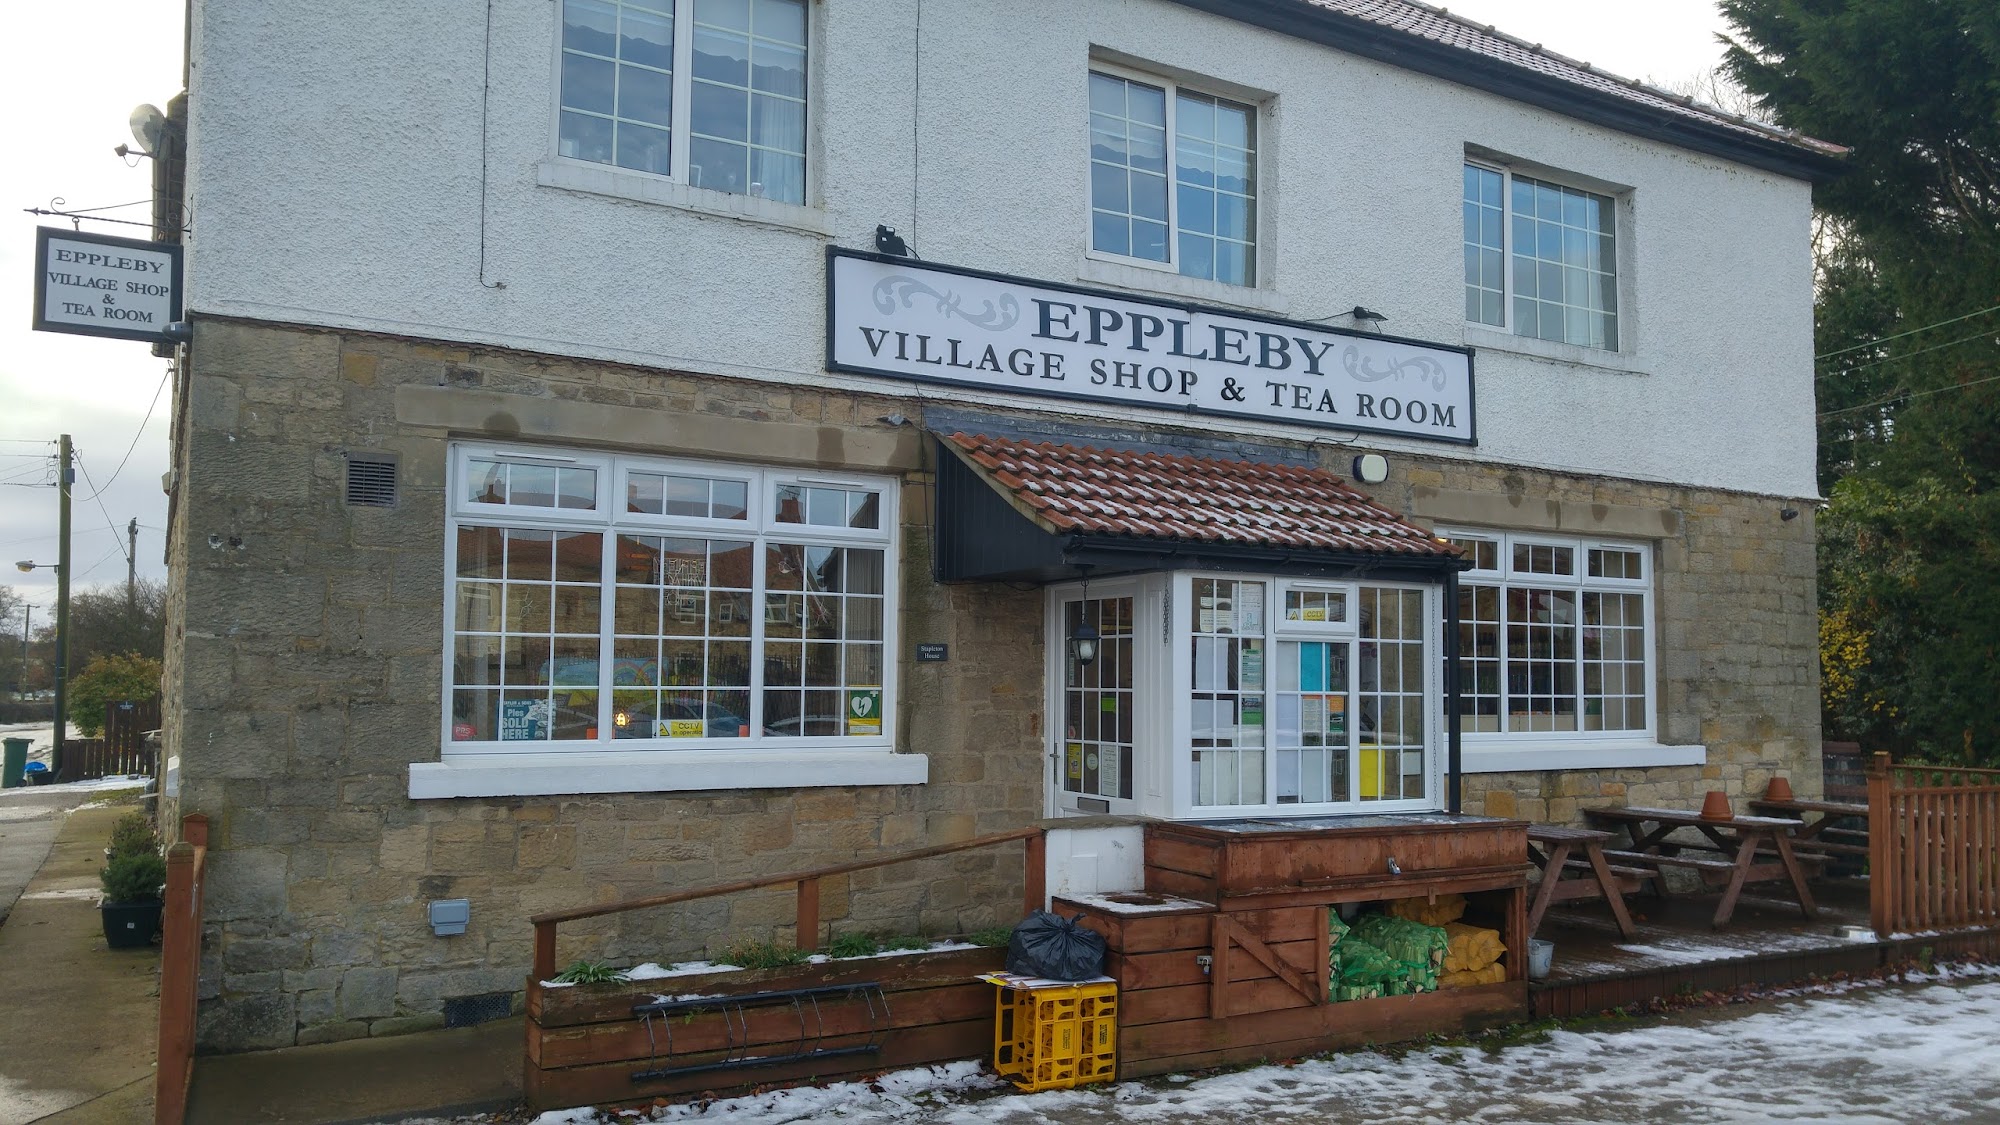 Eppleby Village Shop